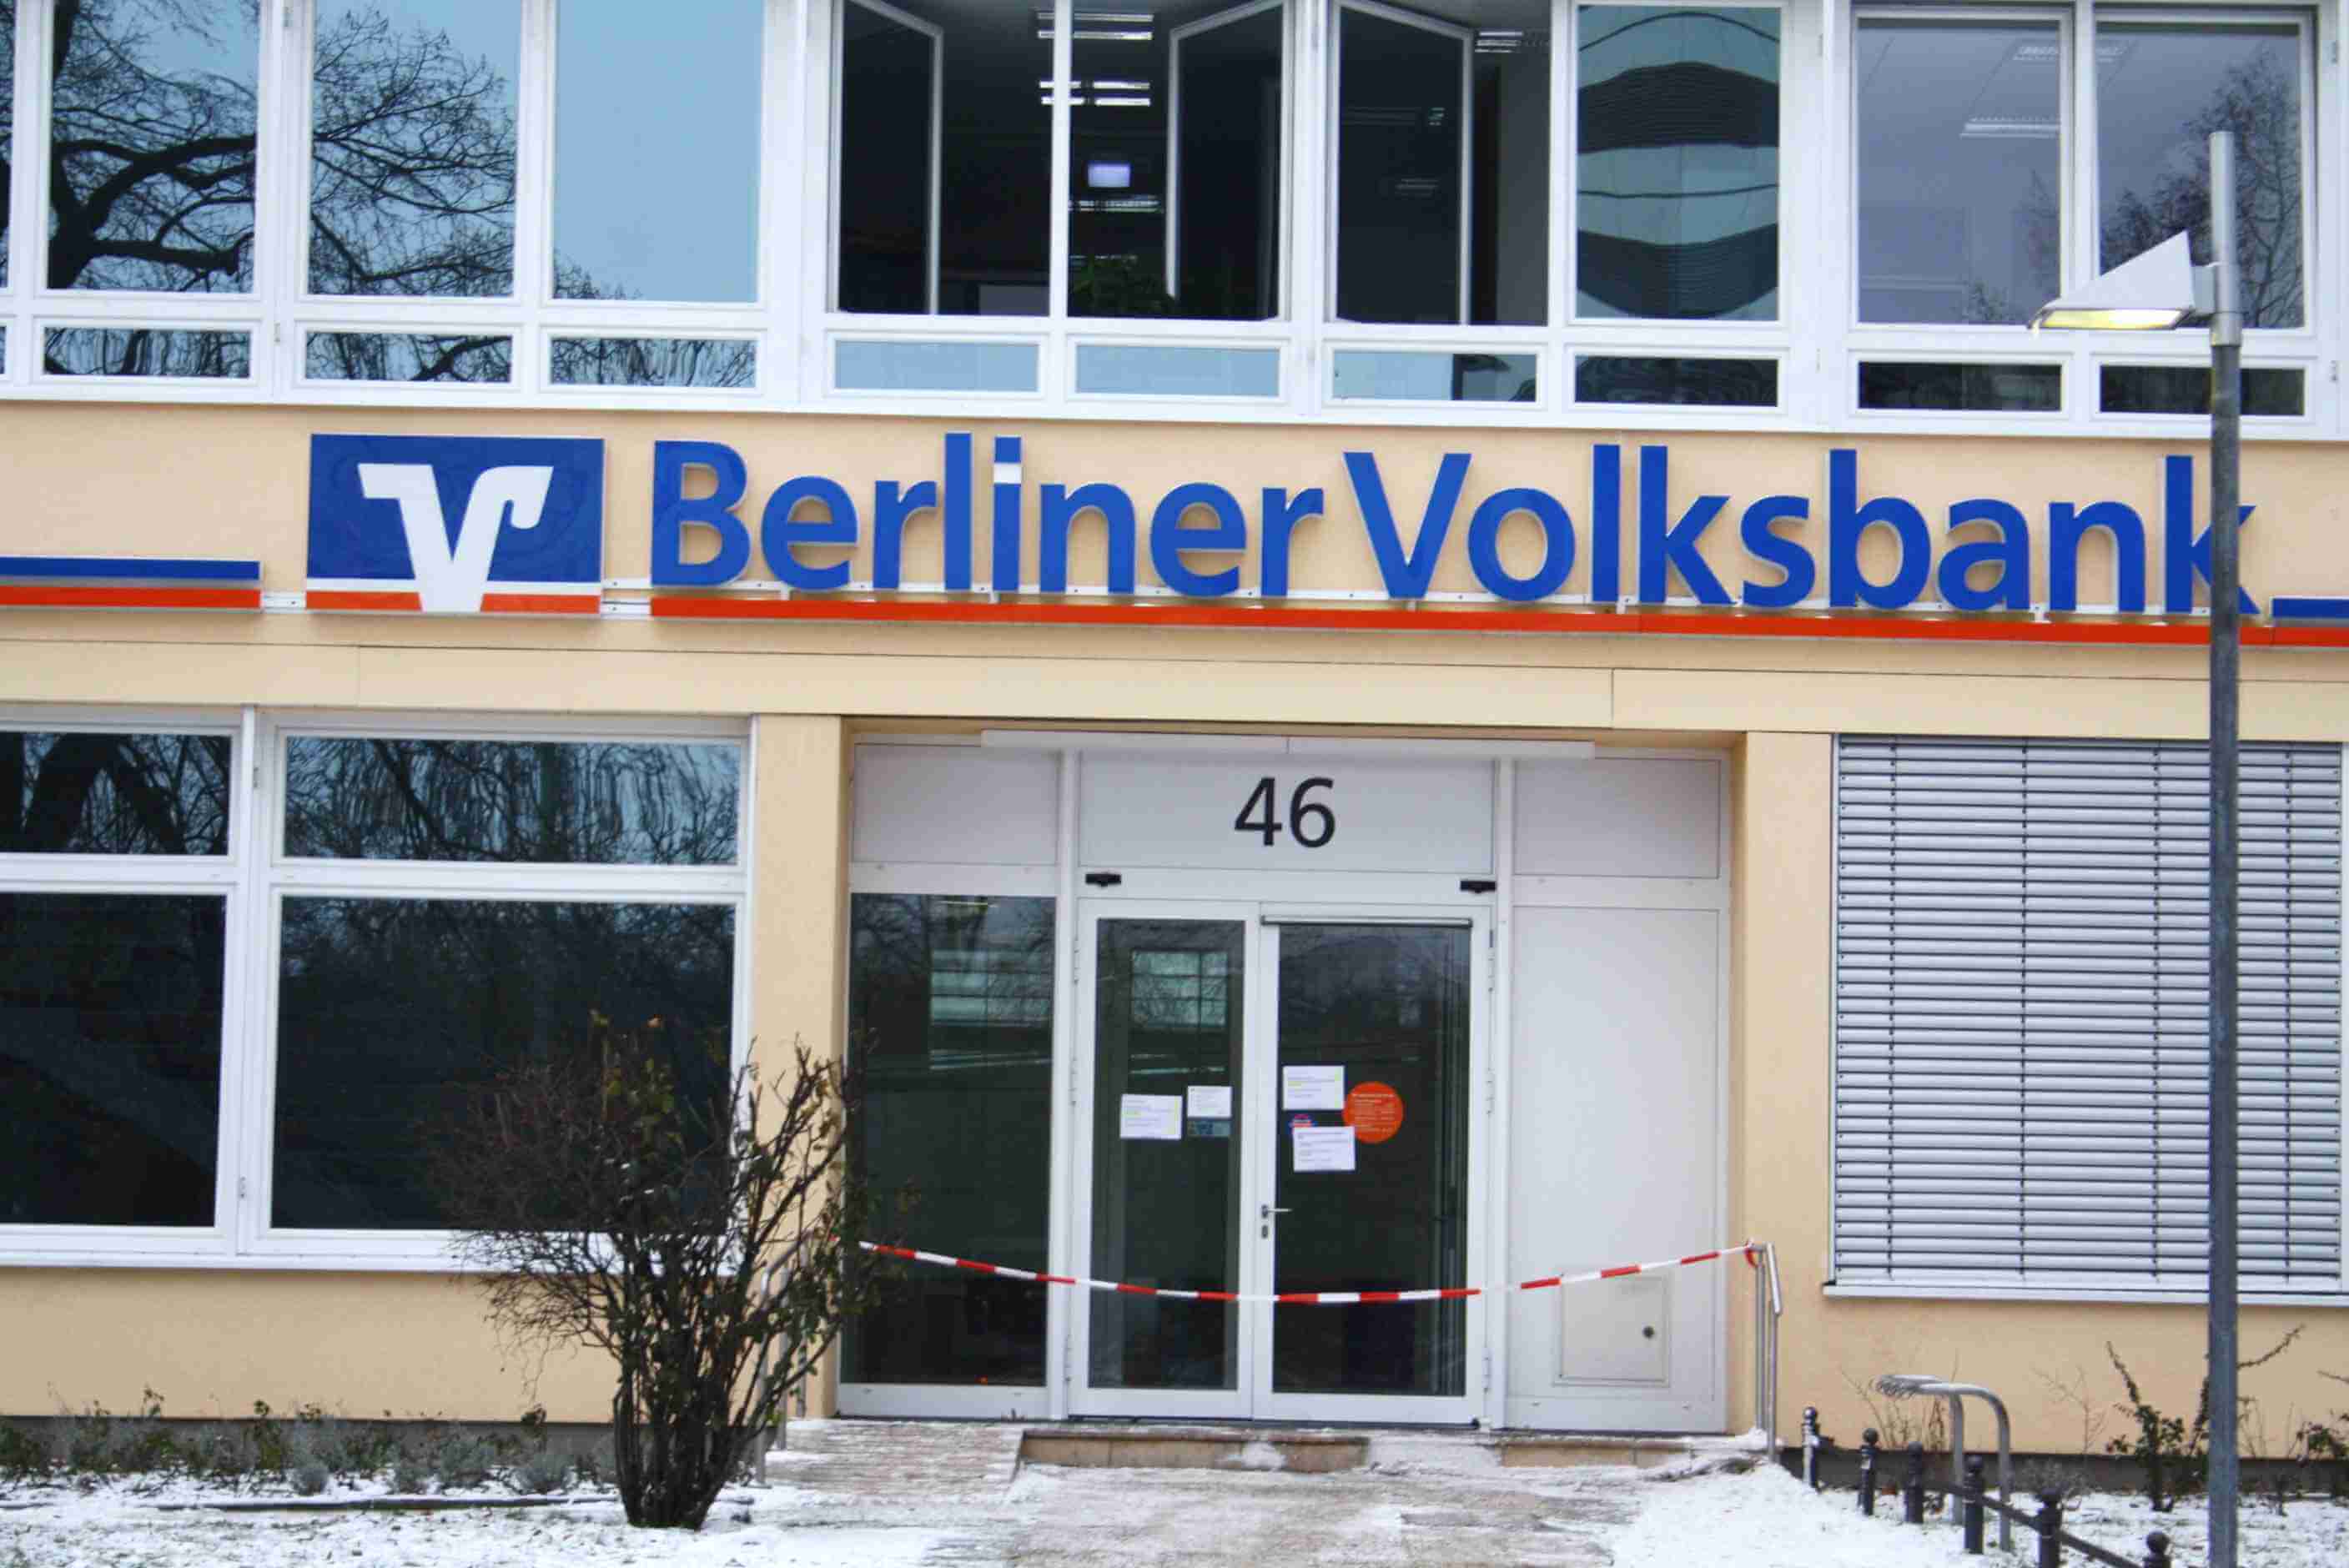 Aktualisiert: Spektakulärer Bankraub in Steglitz: Täter graben 30 Meter langen Tunnel